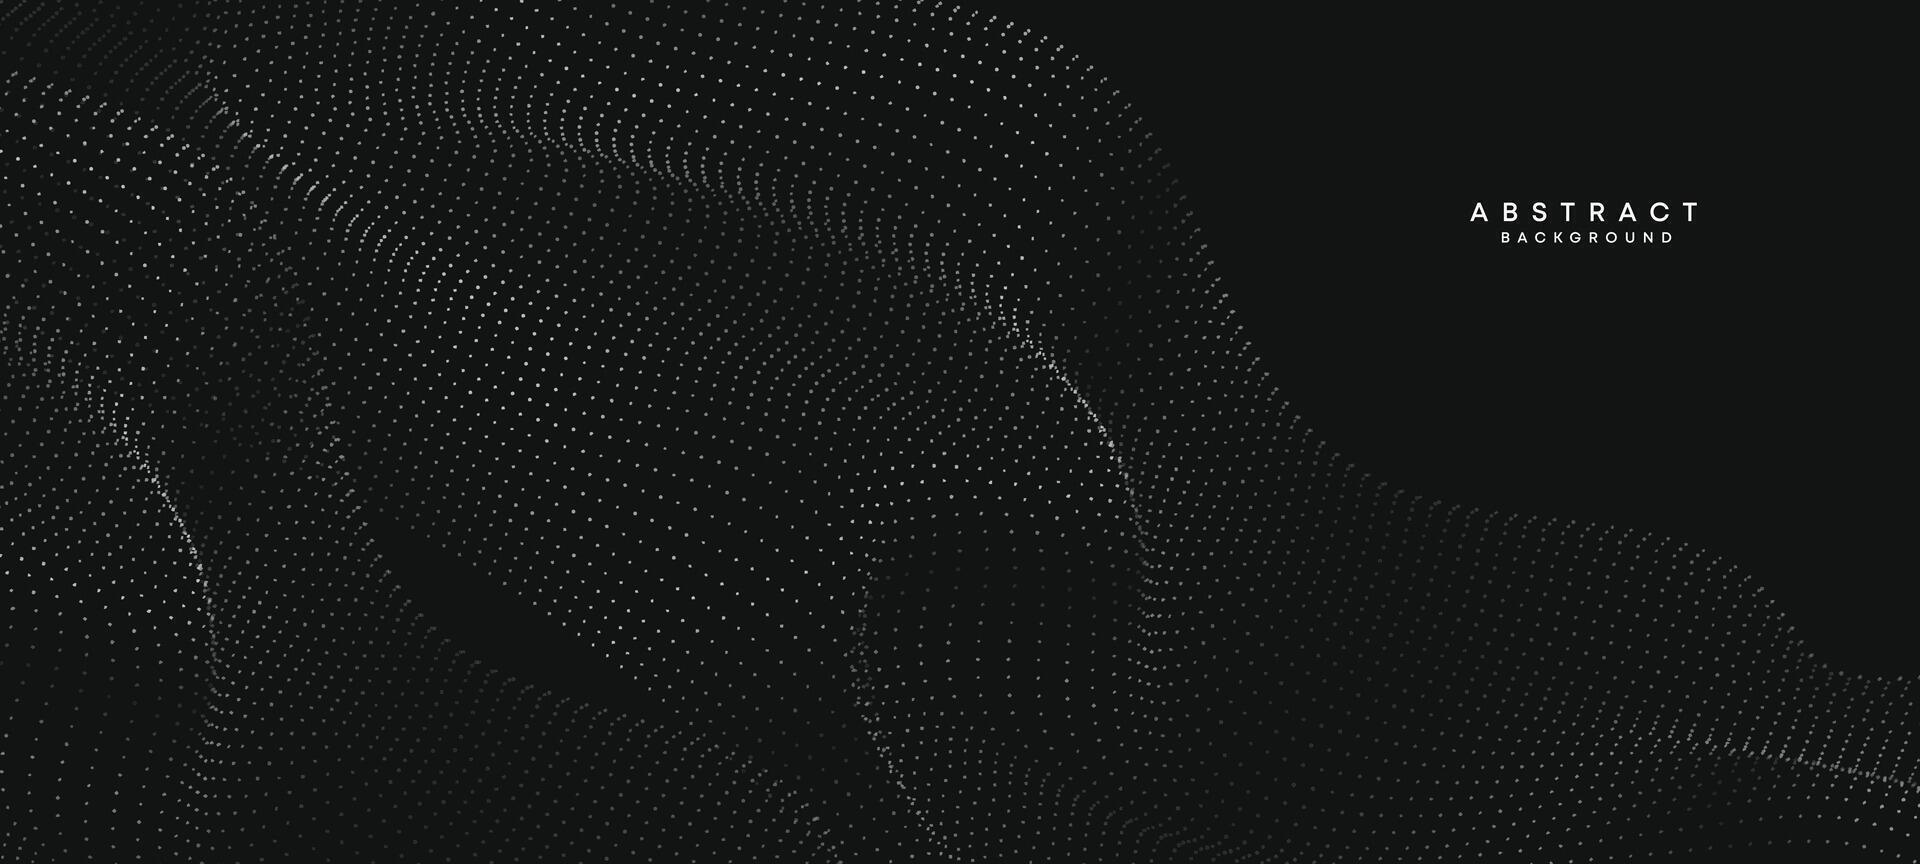 abstrakt svart, vit lutning strömmande punkt vinka partikel geometrisk teknologi bakgrund. digital trogen Anka grå lutning prickad Vinka. begrepp för vetenskap, musik omslag, hemsida, rubrik vektor